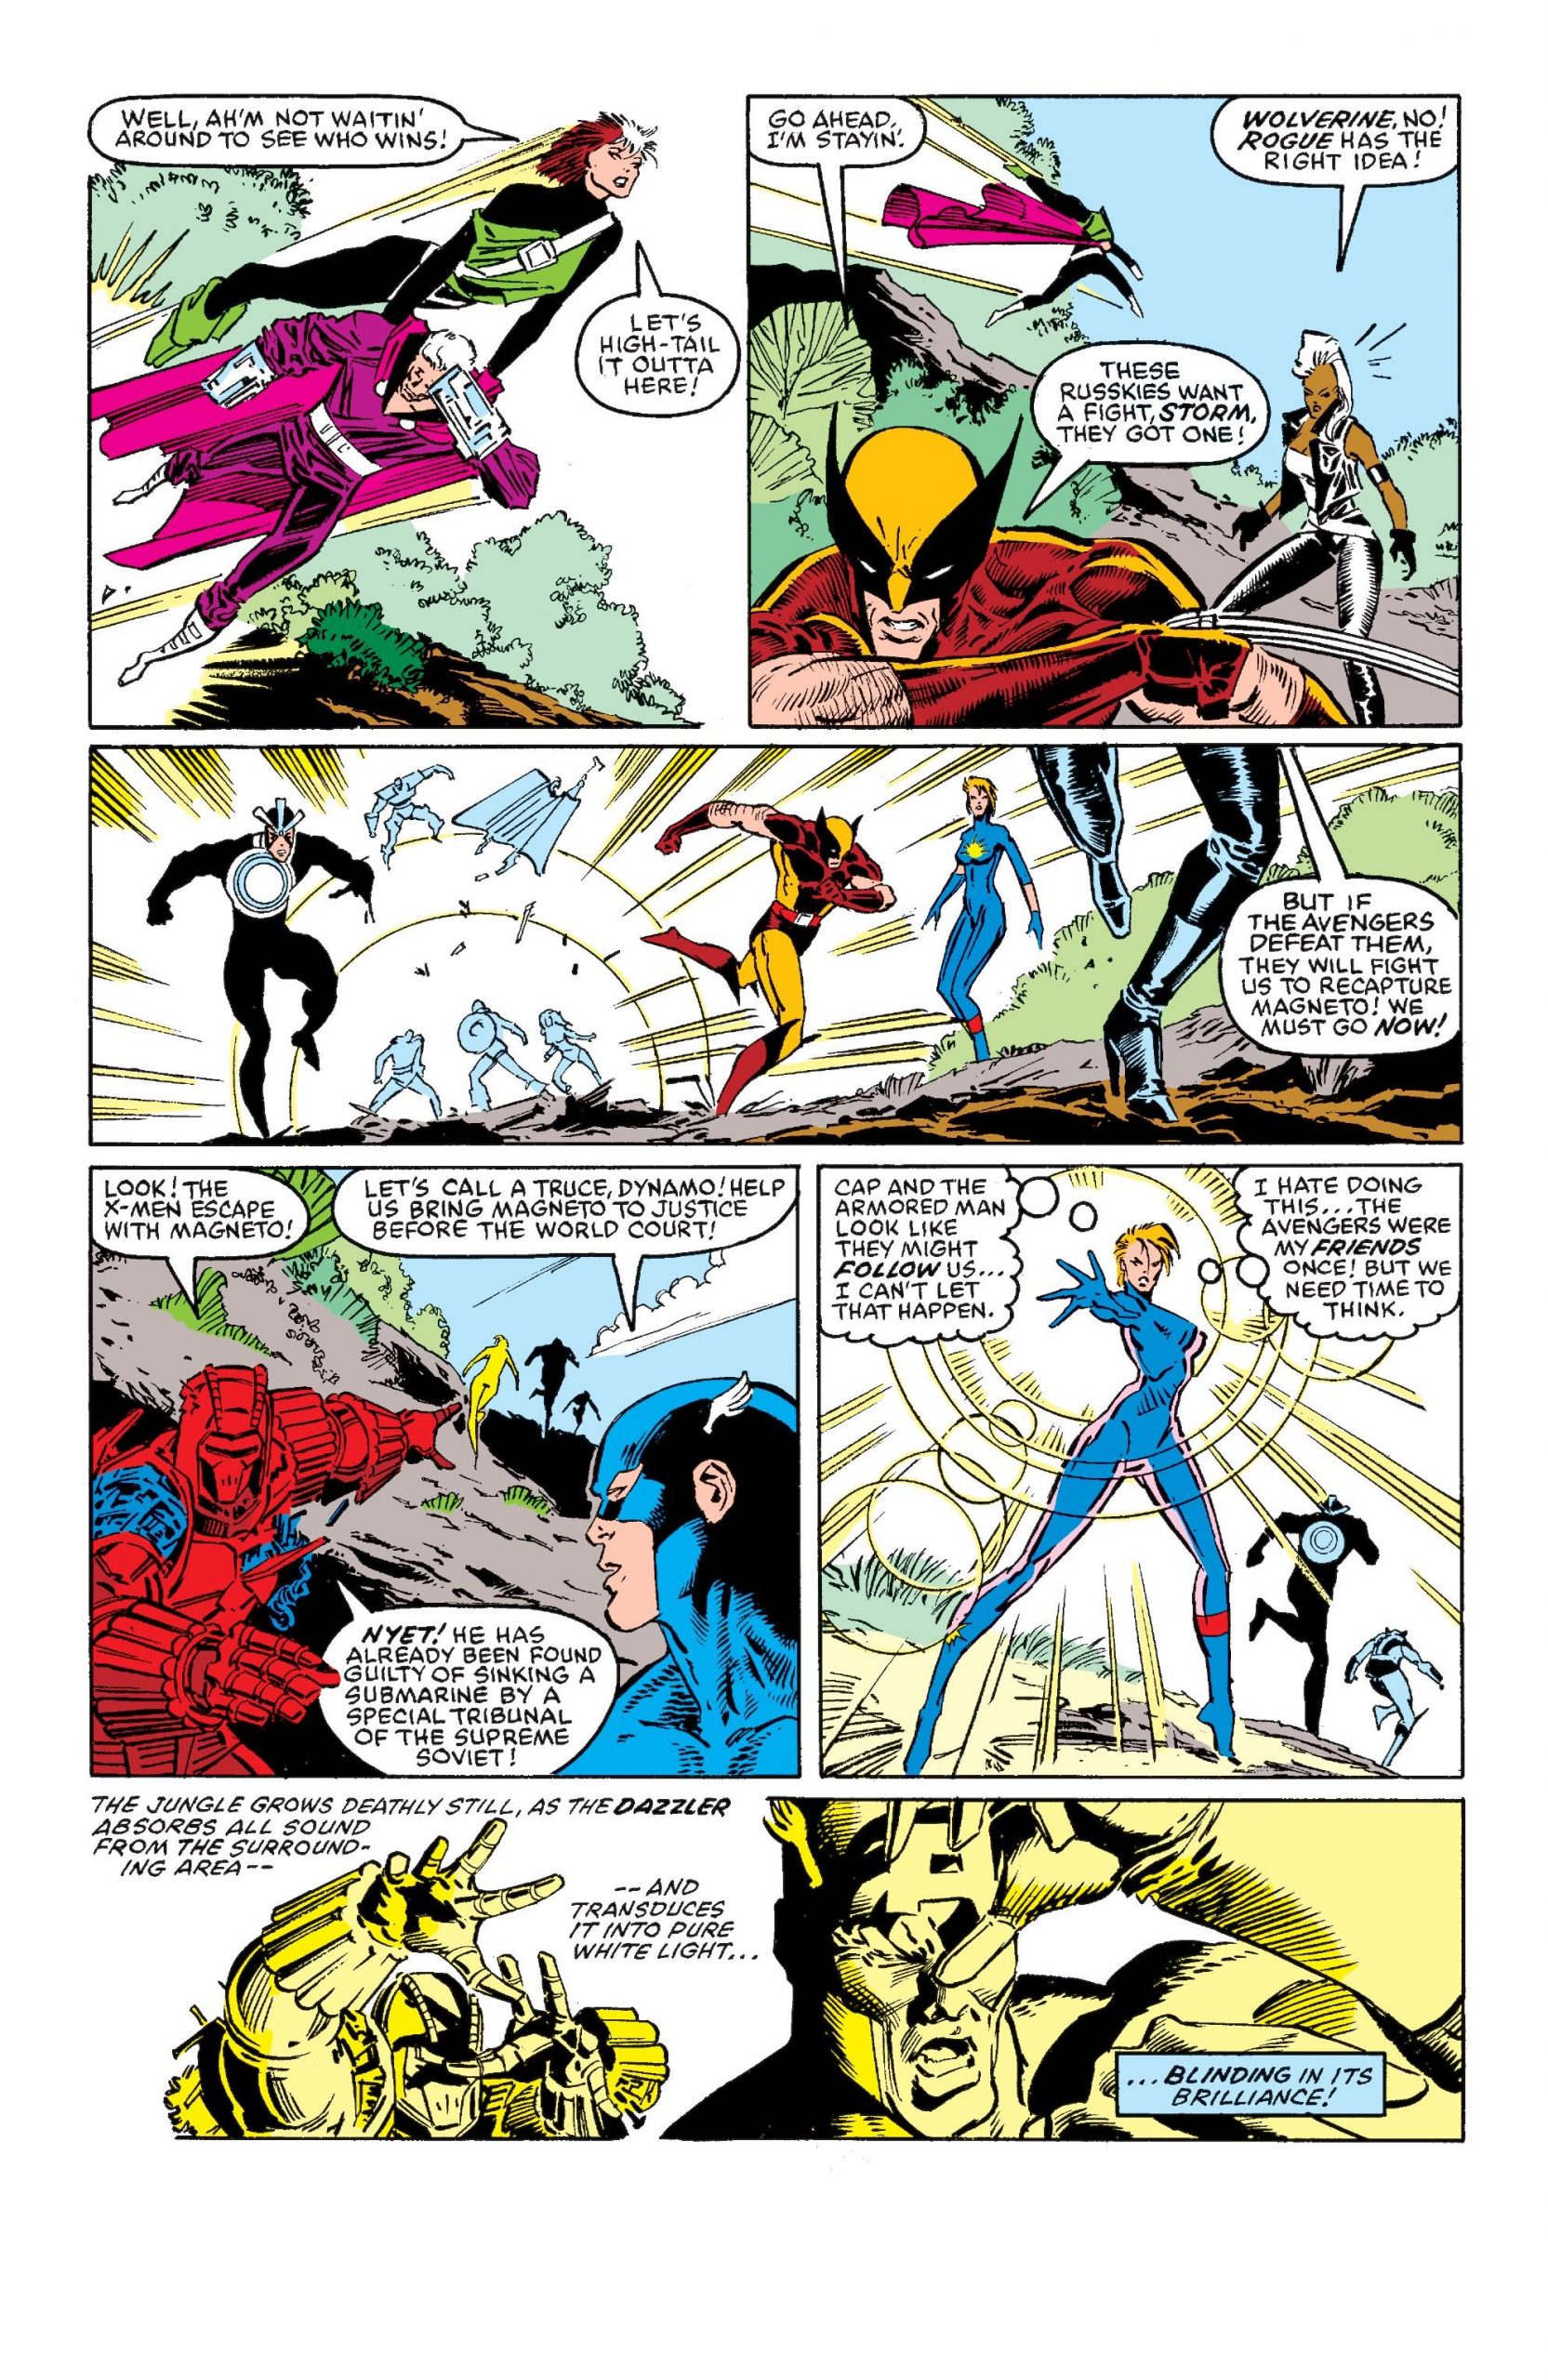 X-Men Vs Avengers review